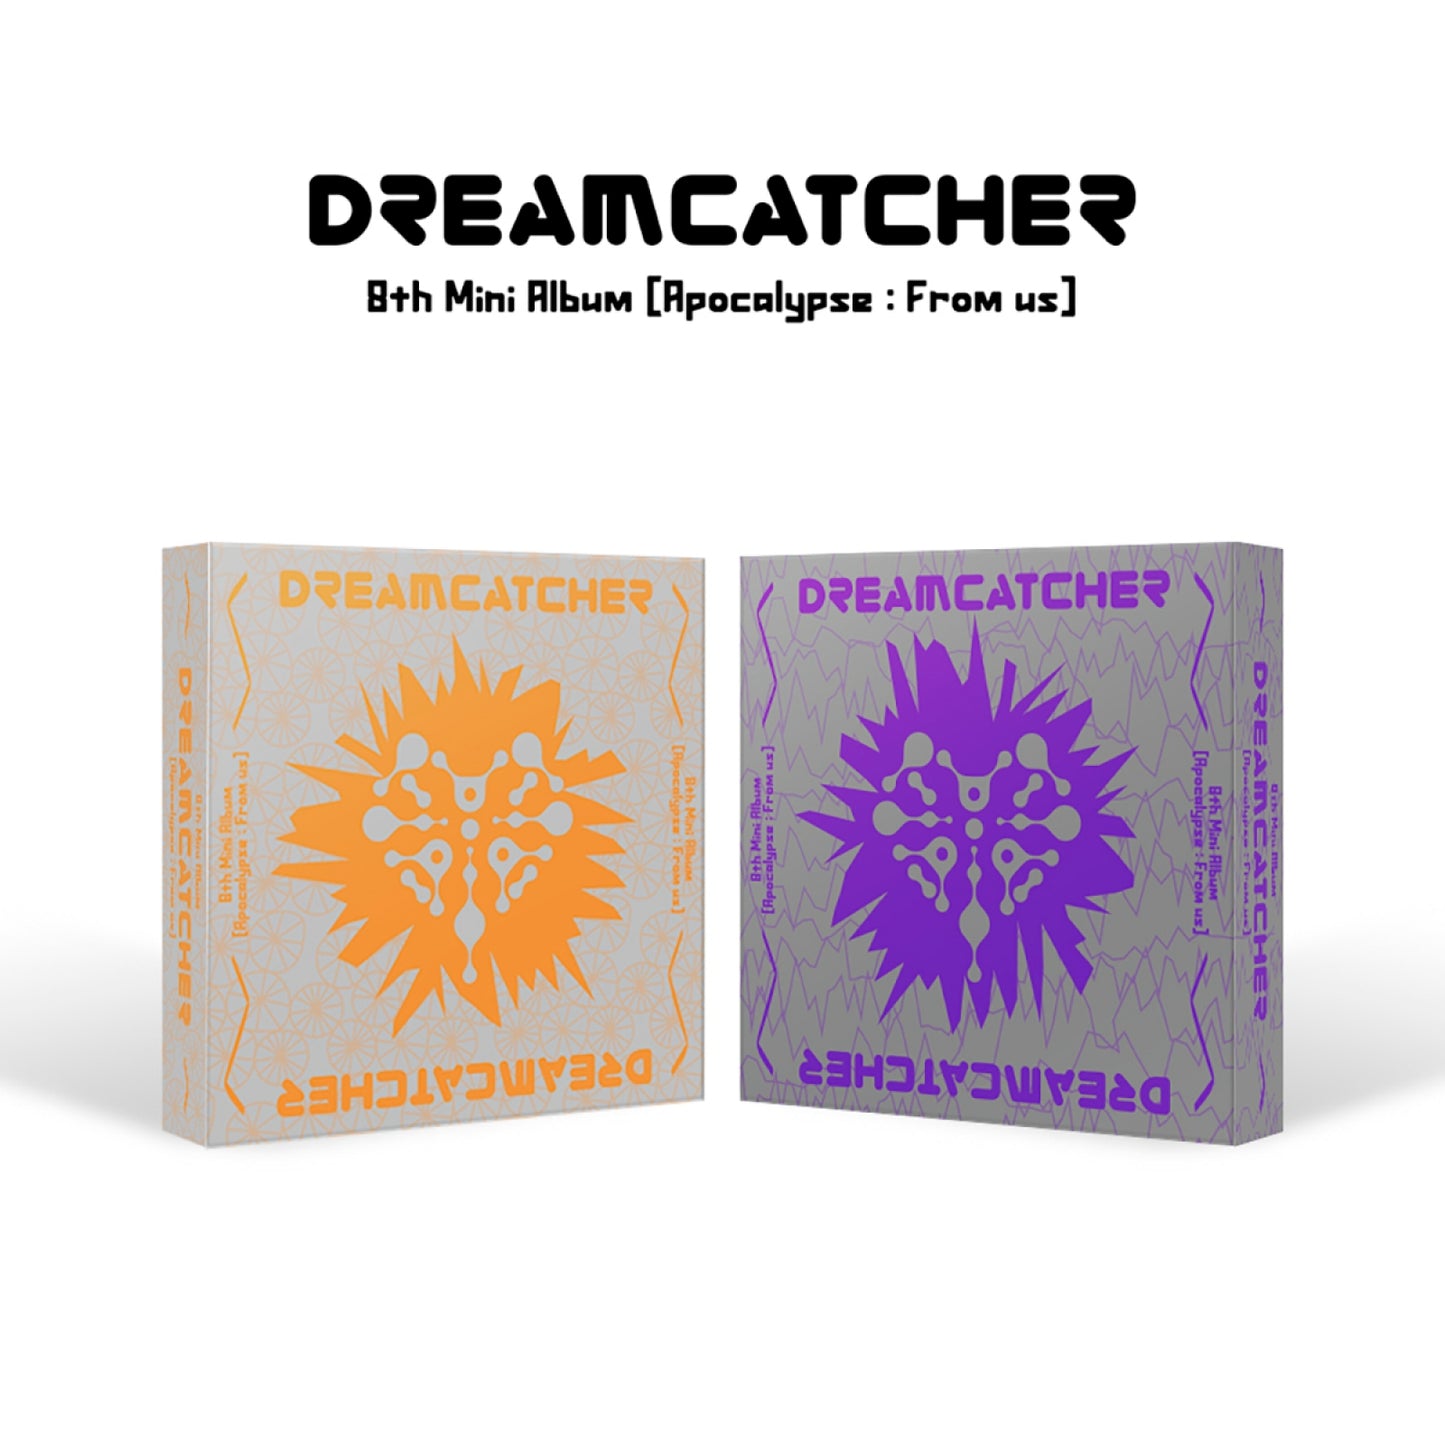 DREAMCATCHER | 8TH MINI ALBUM | Apocalypse : From us